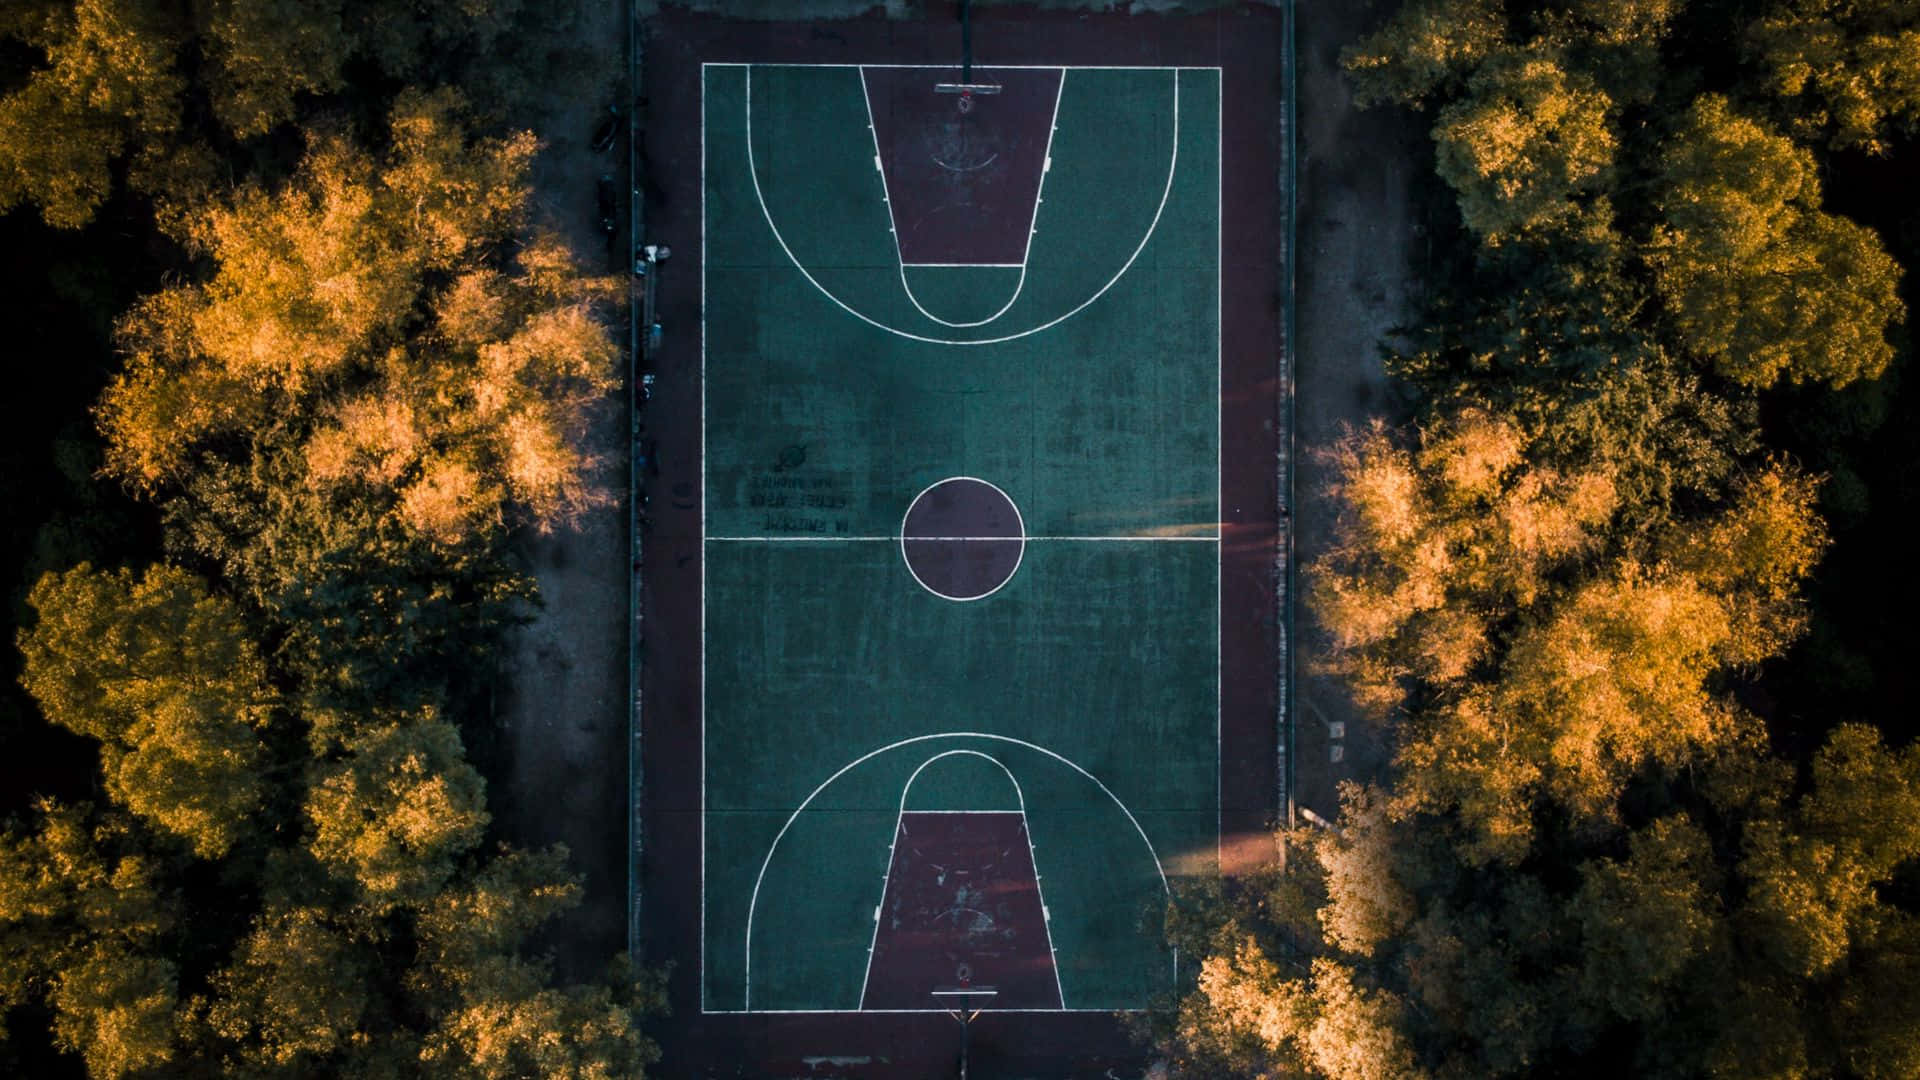 Utsiktfrån Ovan Av En Basketplan I Parken.